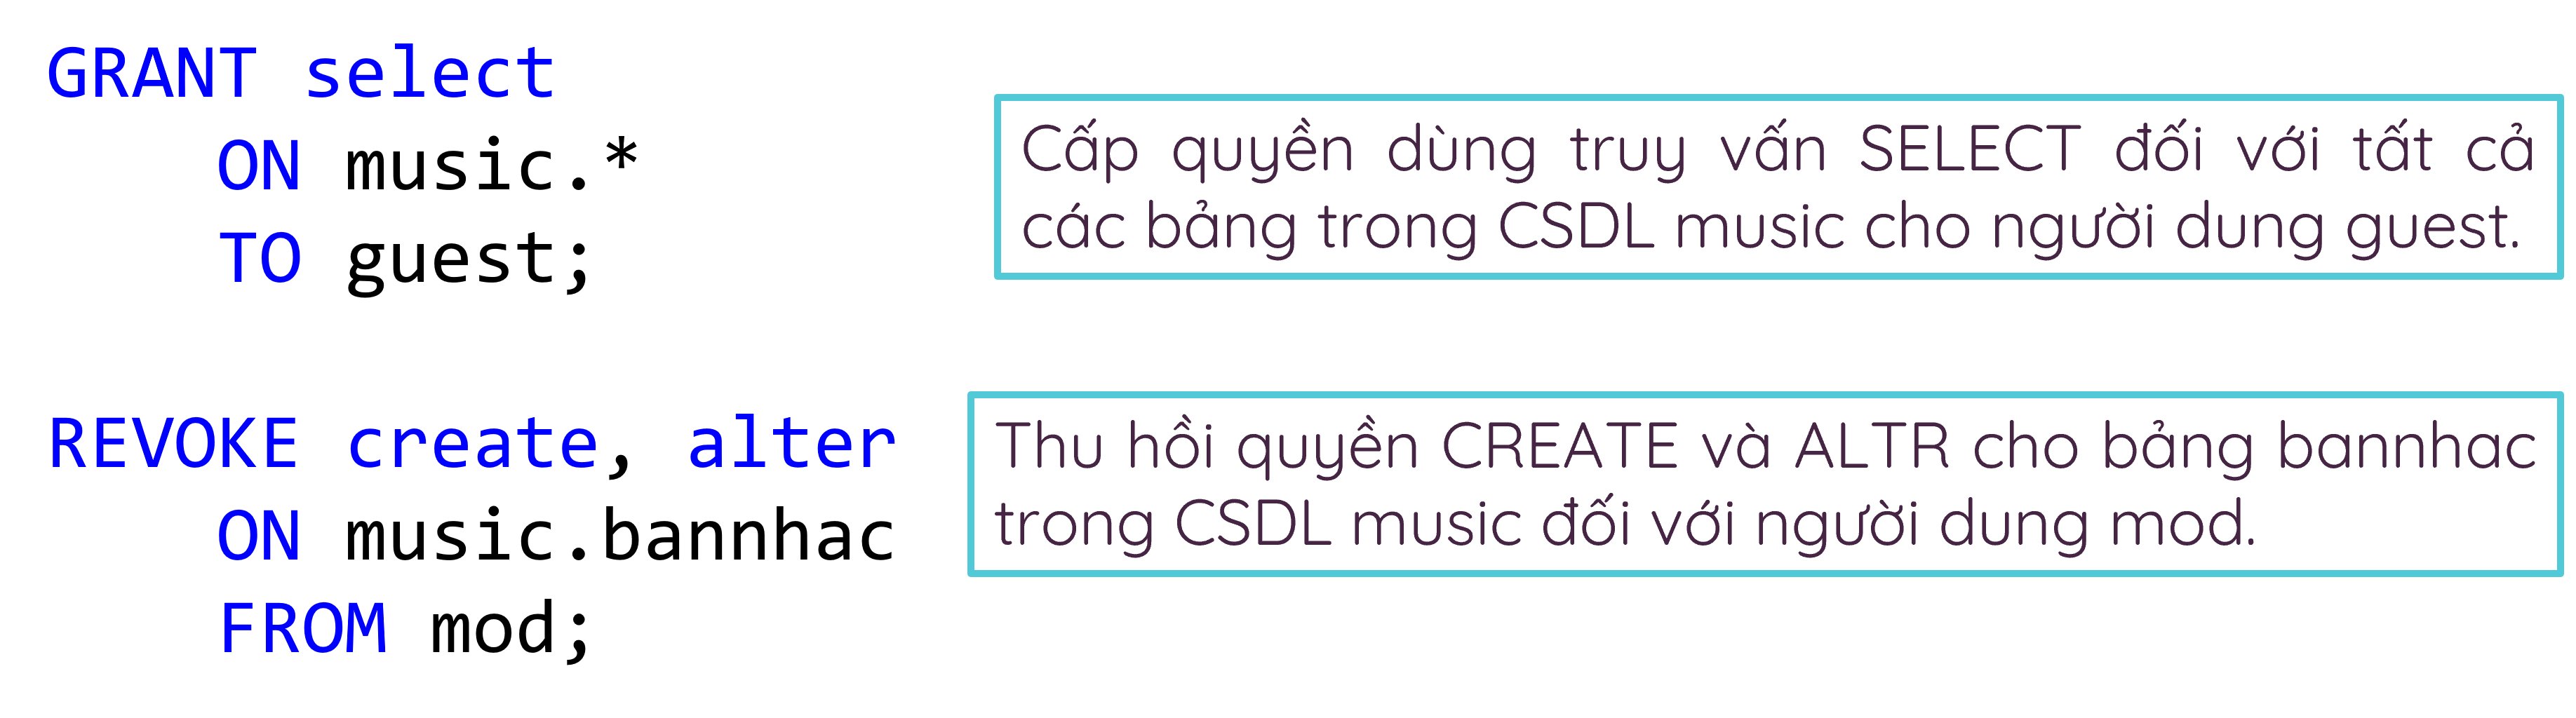 Phân quyền sử dụng lệnh trong CSDL.